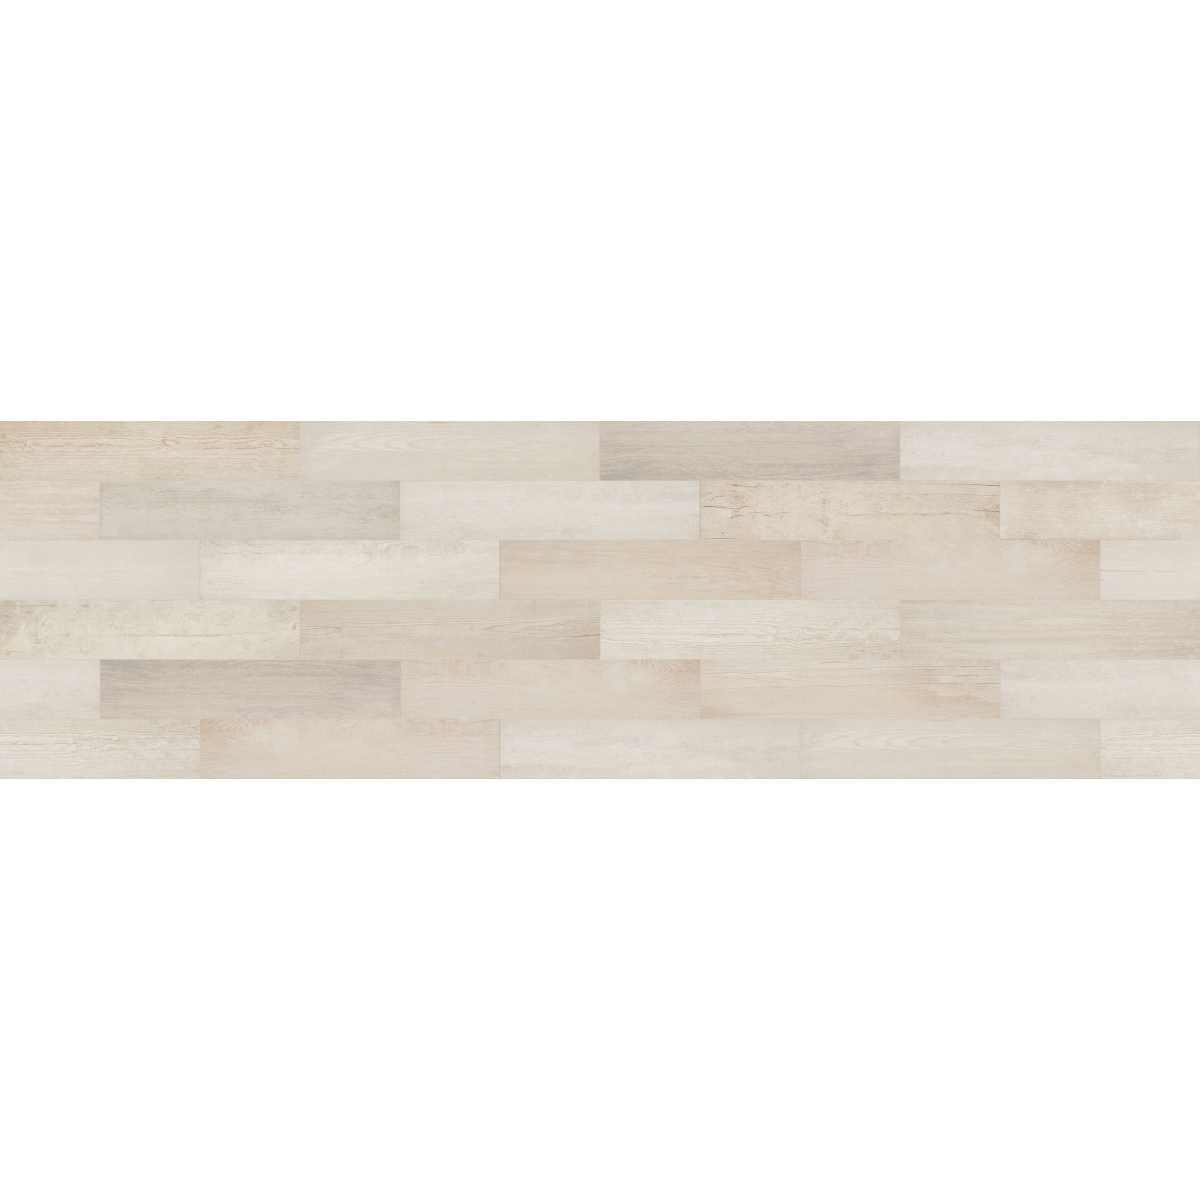 Stela White série base 19,41x97,8 (caixa 1,14m2)